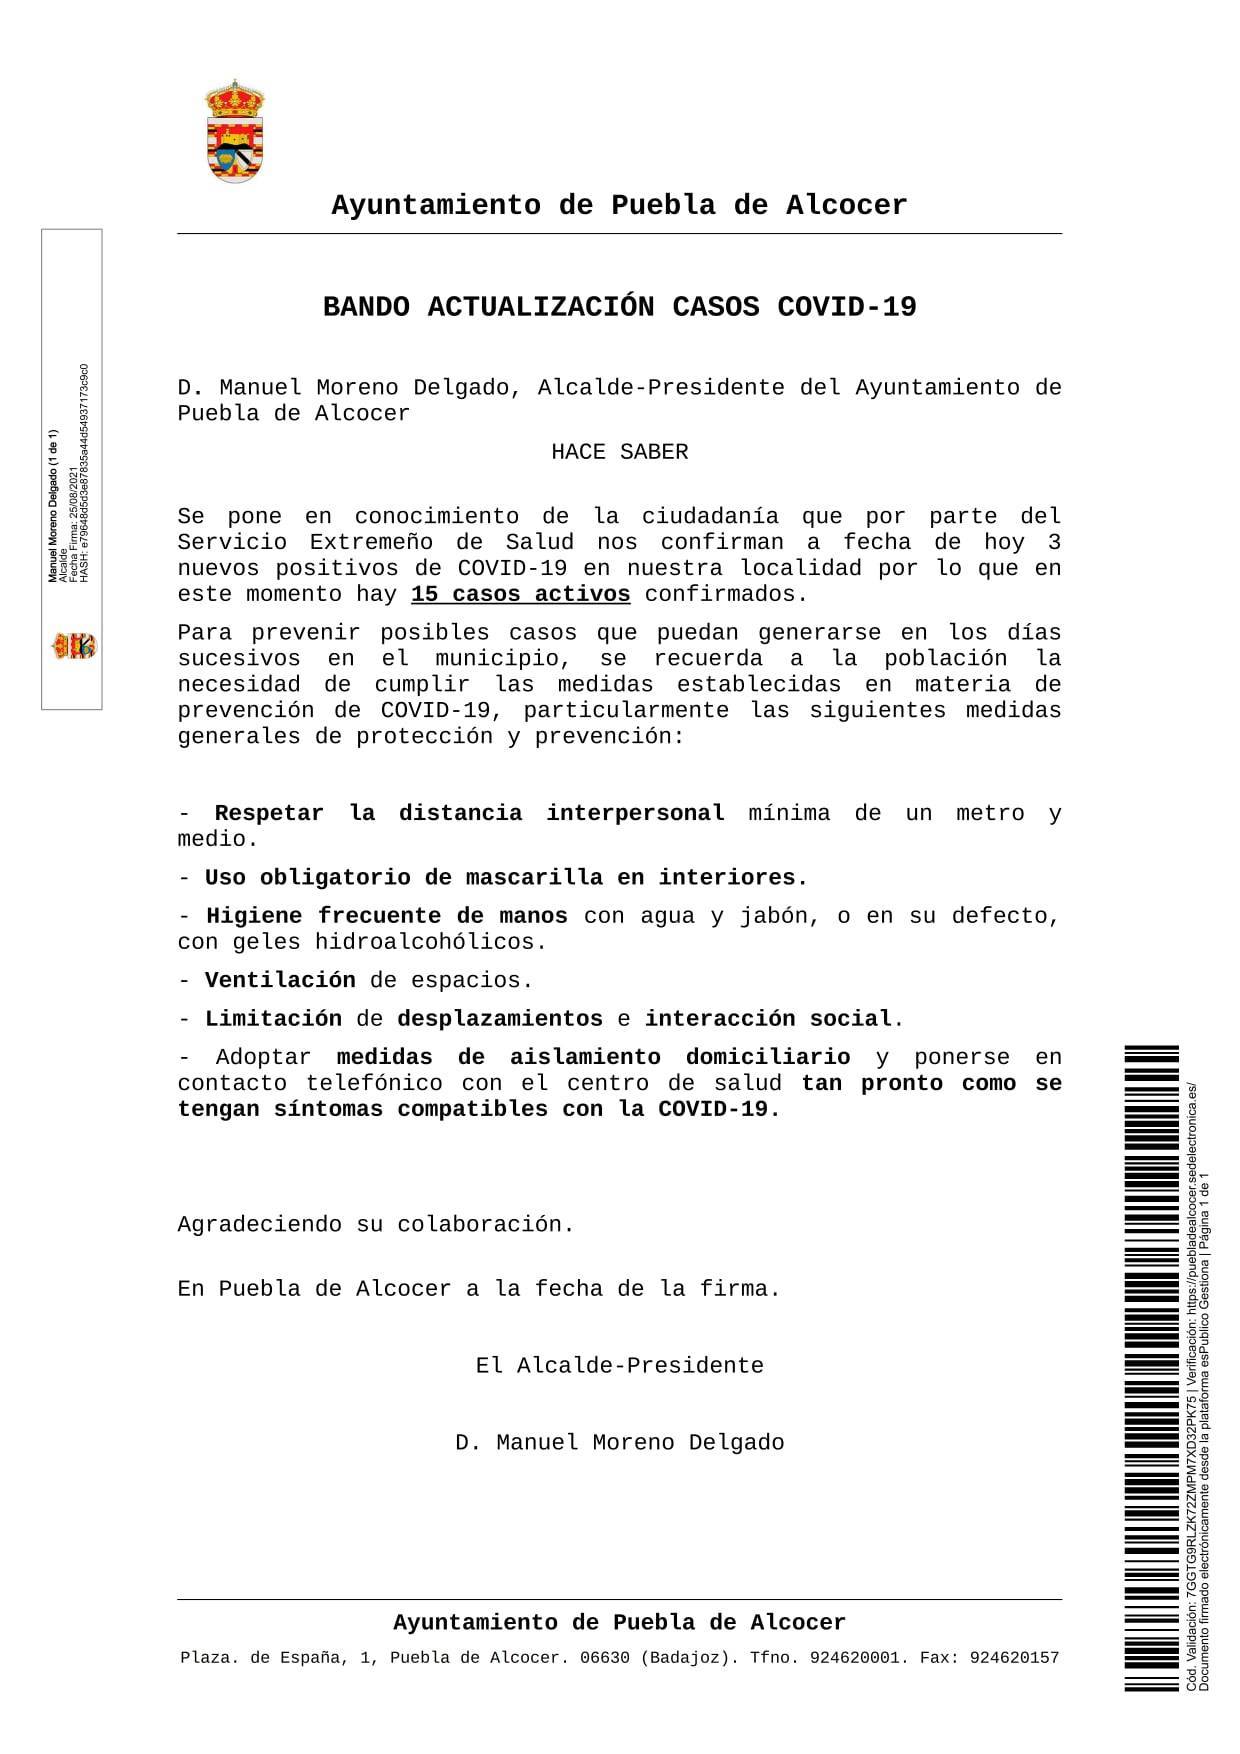 15 casos positivos activos de COVID-19 (agosto 2021) - Puebla de Alcocer (Badajoz)